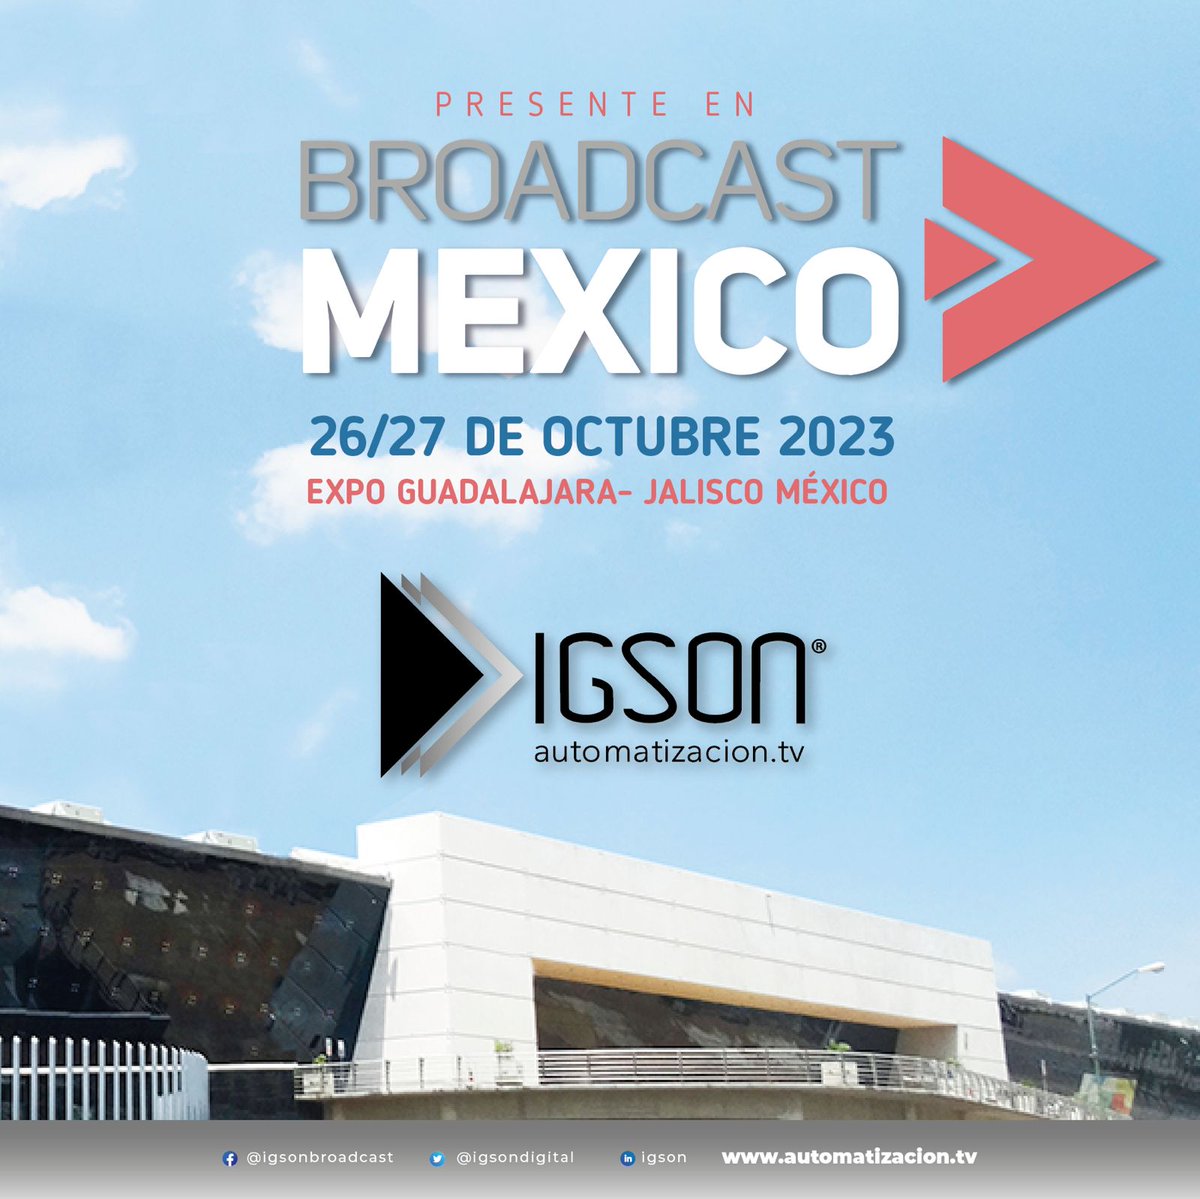 ¡Y seguimos! El 26 y 27 de octubre de 2023, estaremos en la expo @BroadcastMexico en Guadalajara (Jalisco).

Llevamos muuuuuchas novedades. ¿NOS VEMOS?

#broadcastmexico #broadcast #broadcasting #broadcastmedia #broadcastproduction #broadcastmexico #bcmx2023